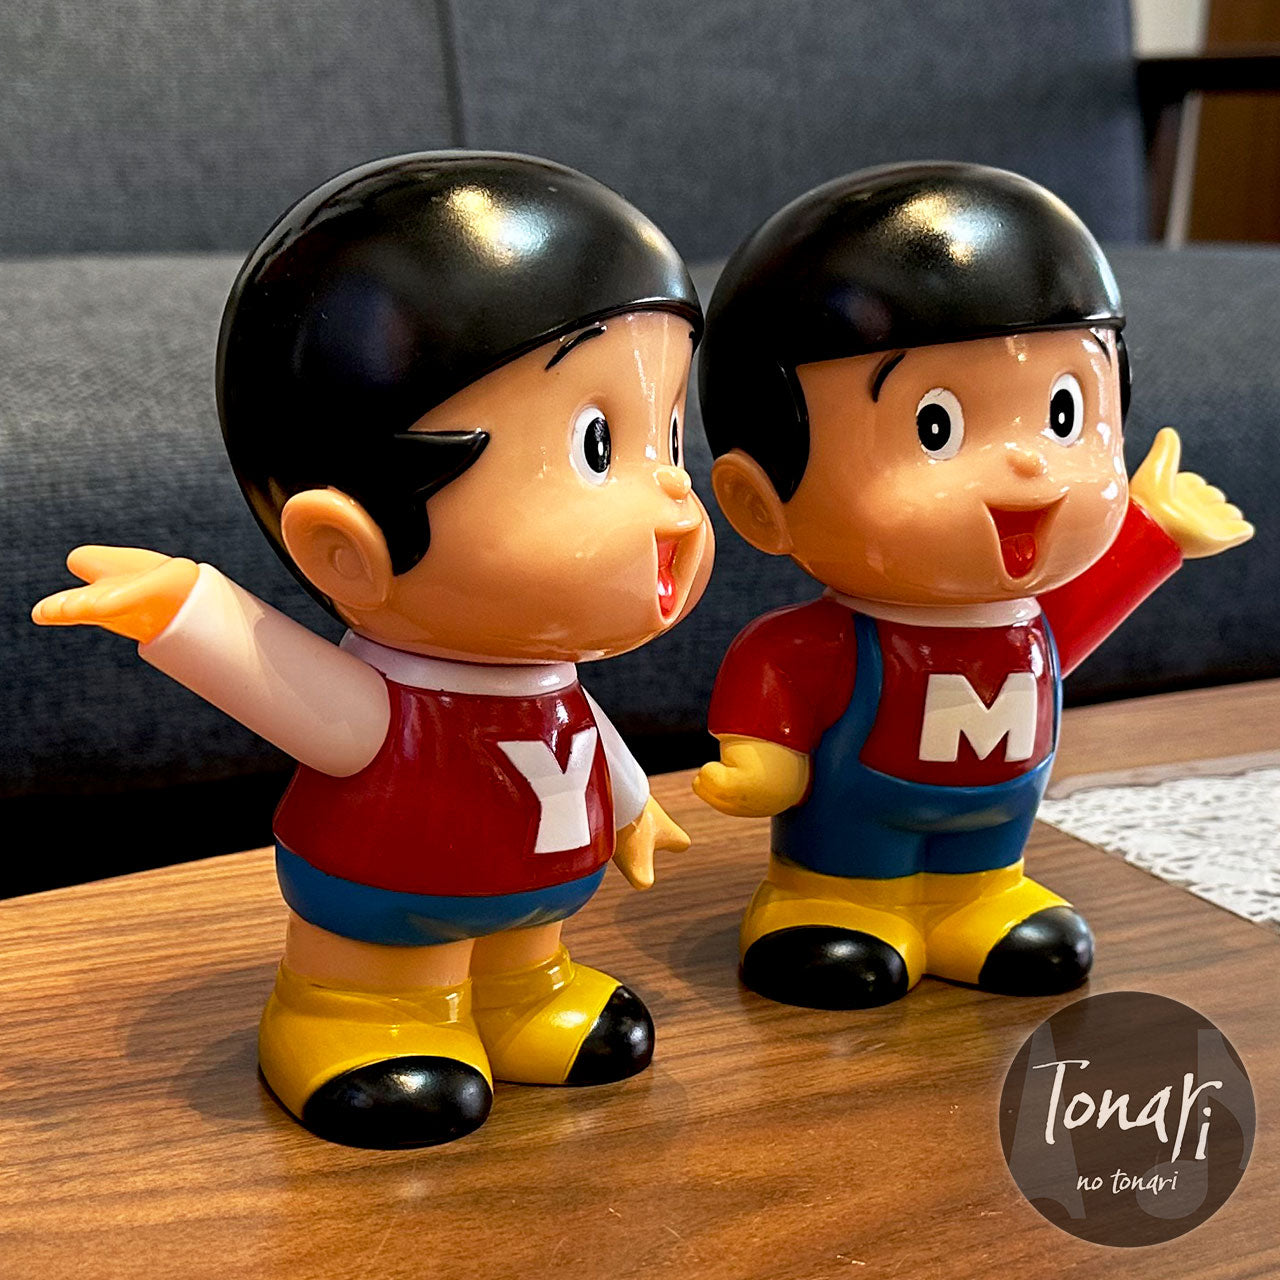 ヤン坊マー坊人形貯金箱 - 沖縄県のおもちゃ